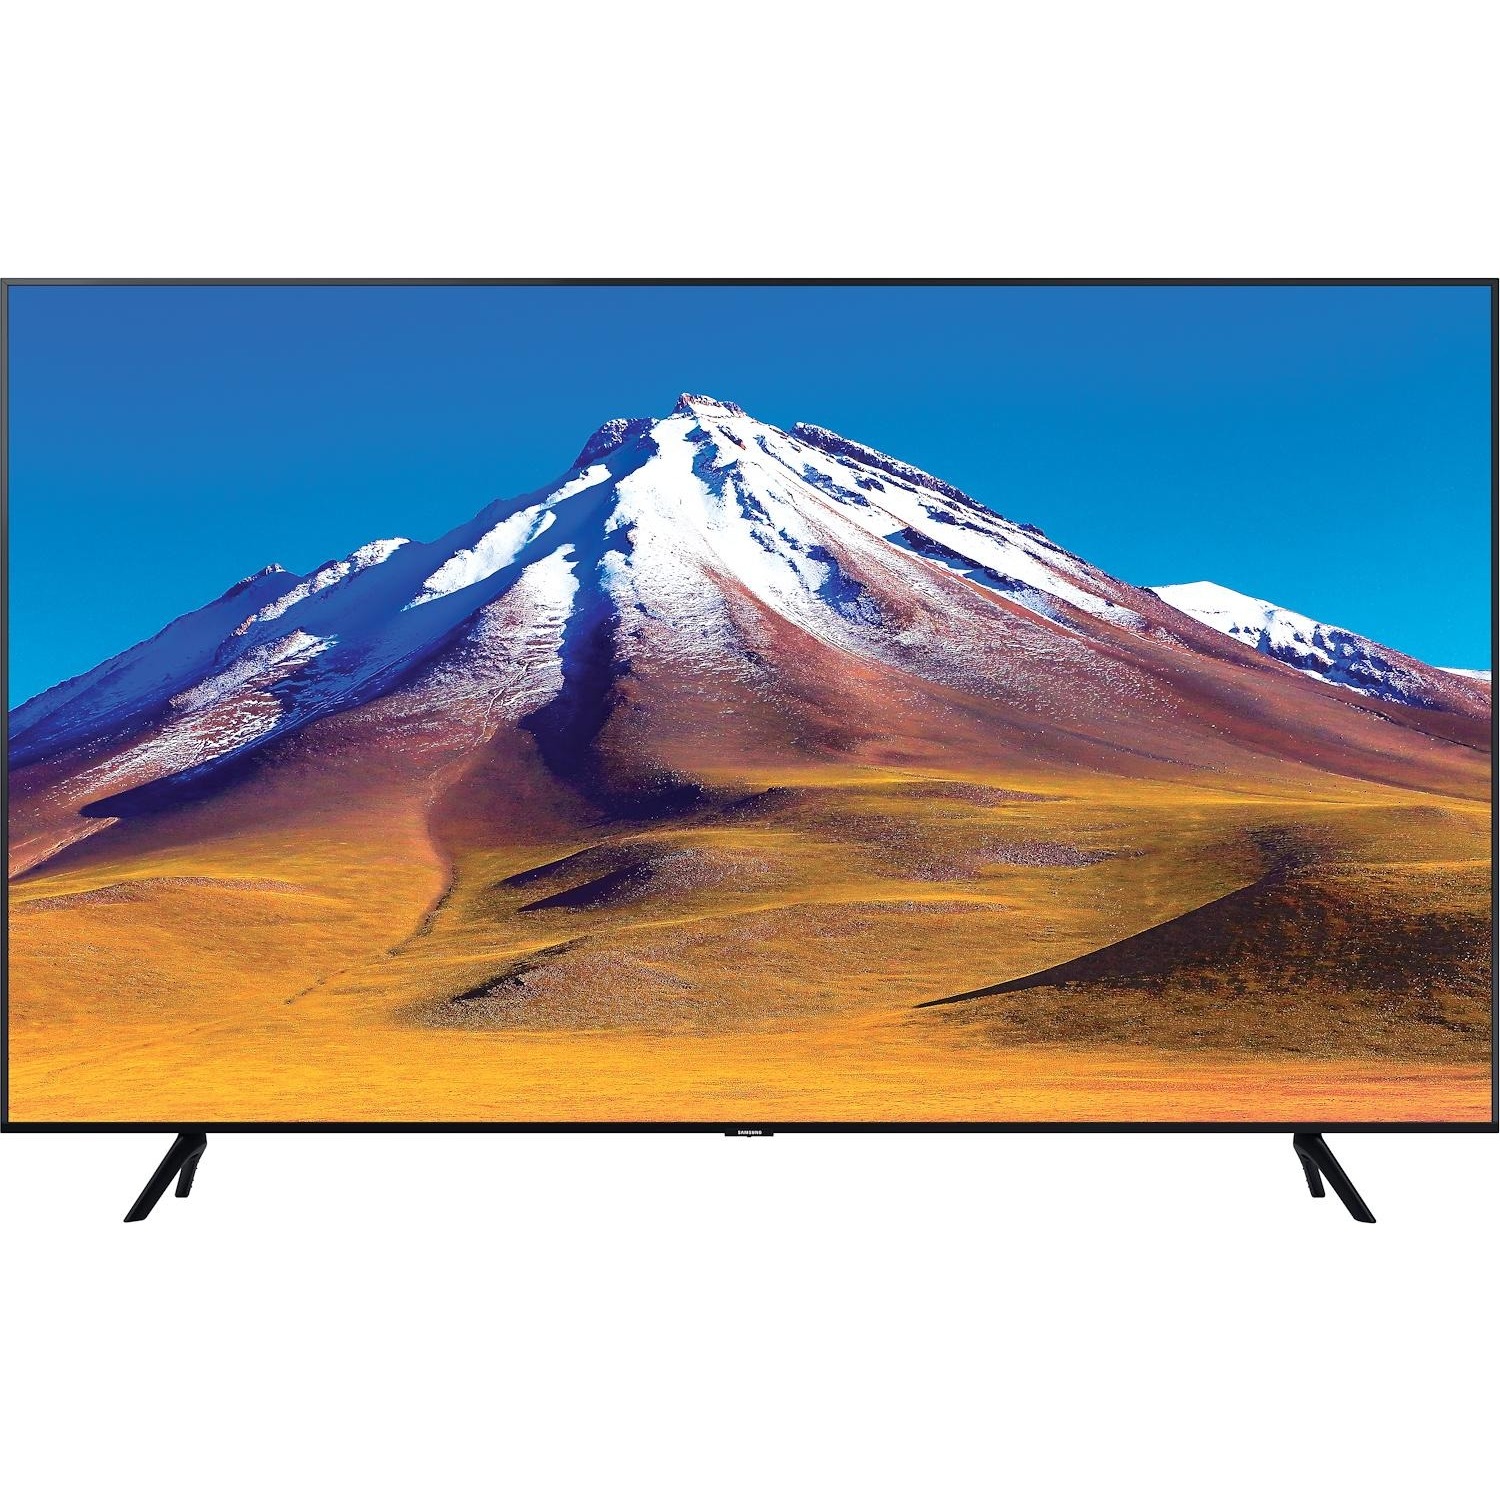 Immagine per TV LED Smart 4K UHD Samsung 75TU7090 da DIMOStore